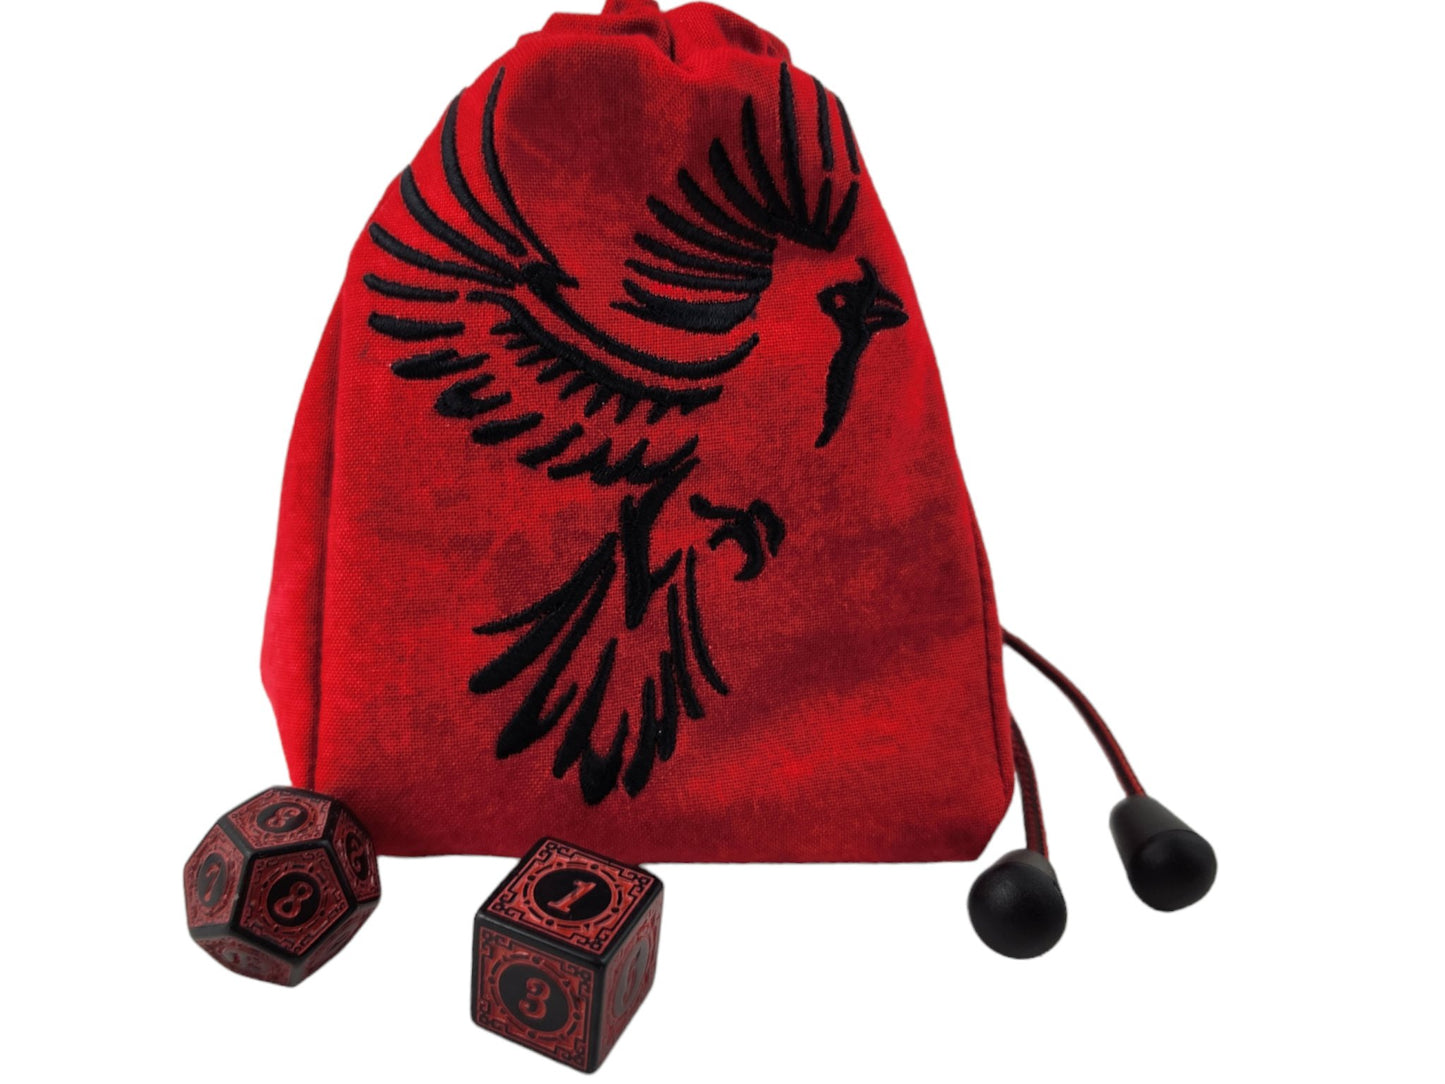 Cardinal Bird Dice Bag - Rowan Gate